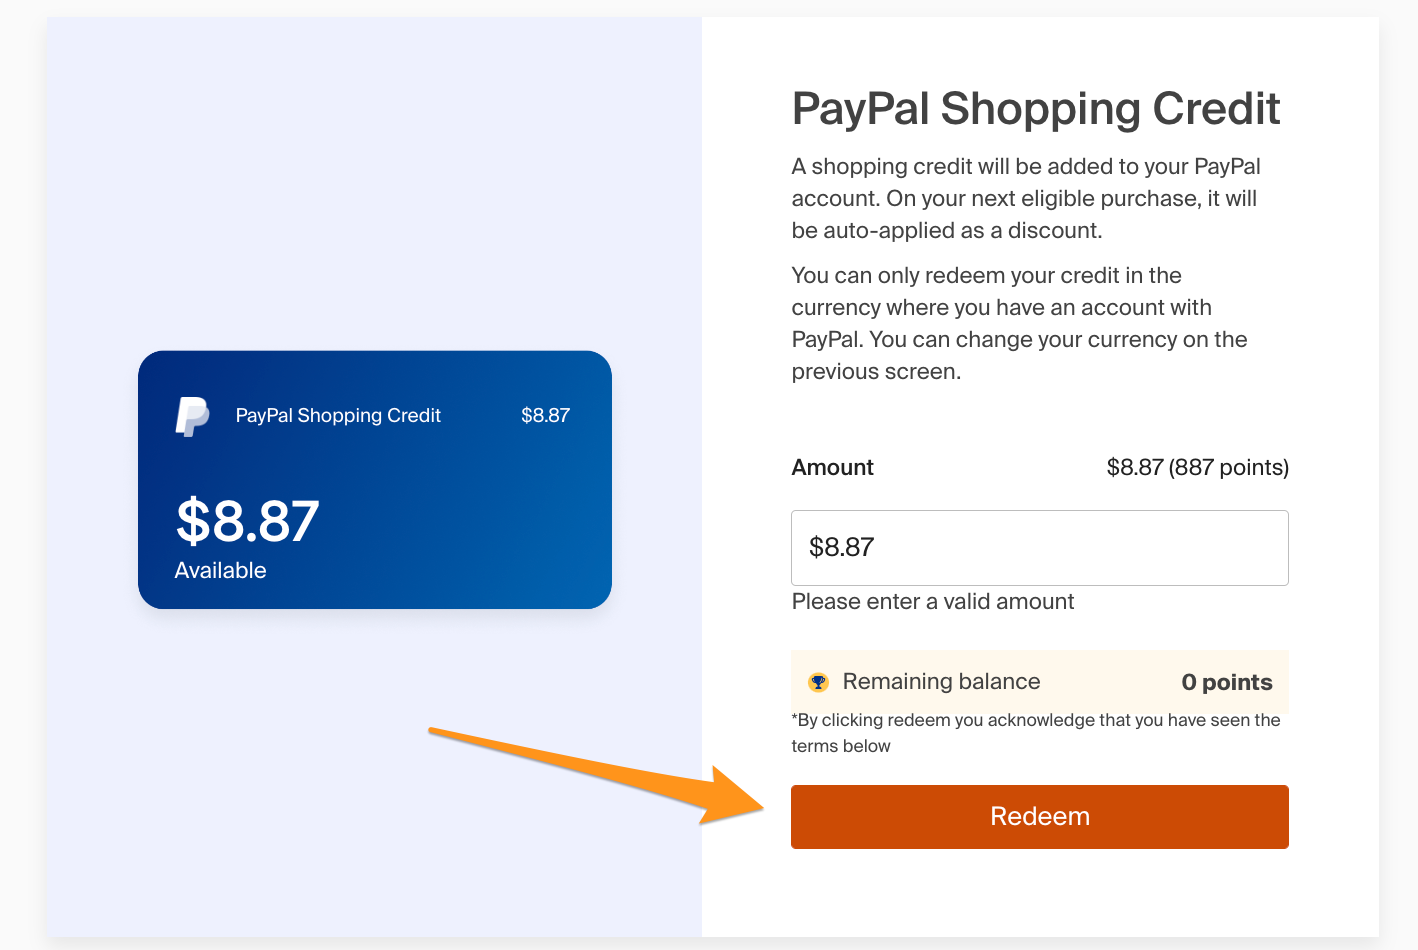 Денежные переводы и онлайн-платежи PayPal | PayPal RU